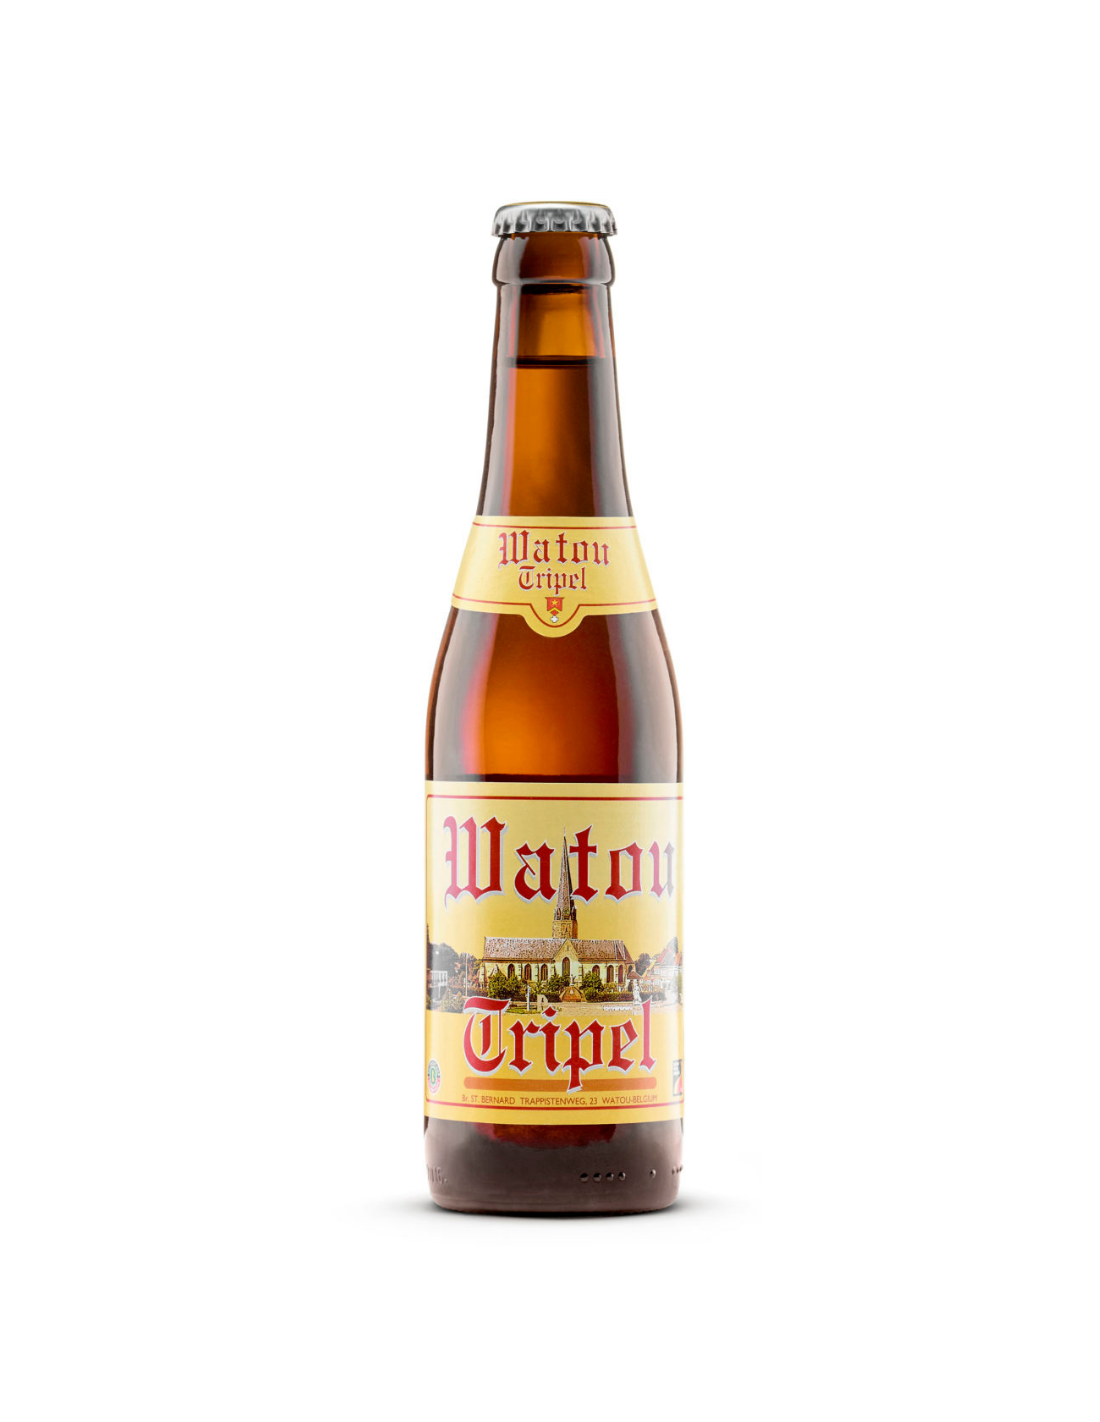 Bere blonda Watou, 7.5% alc., 0.33L, Belgia alcooldiscount.ro